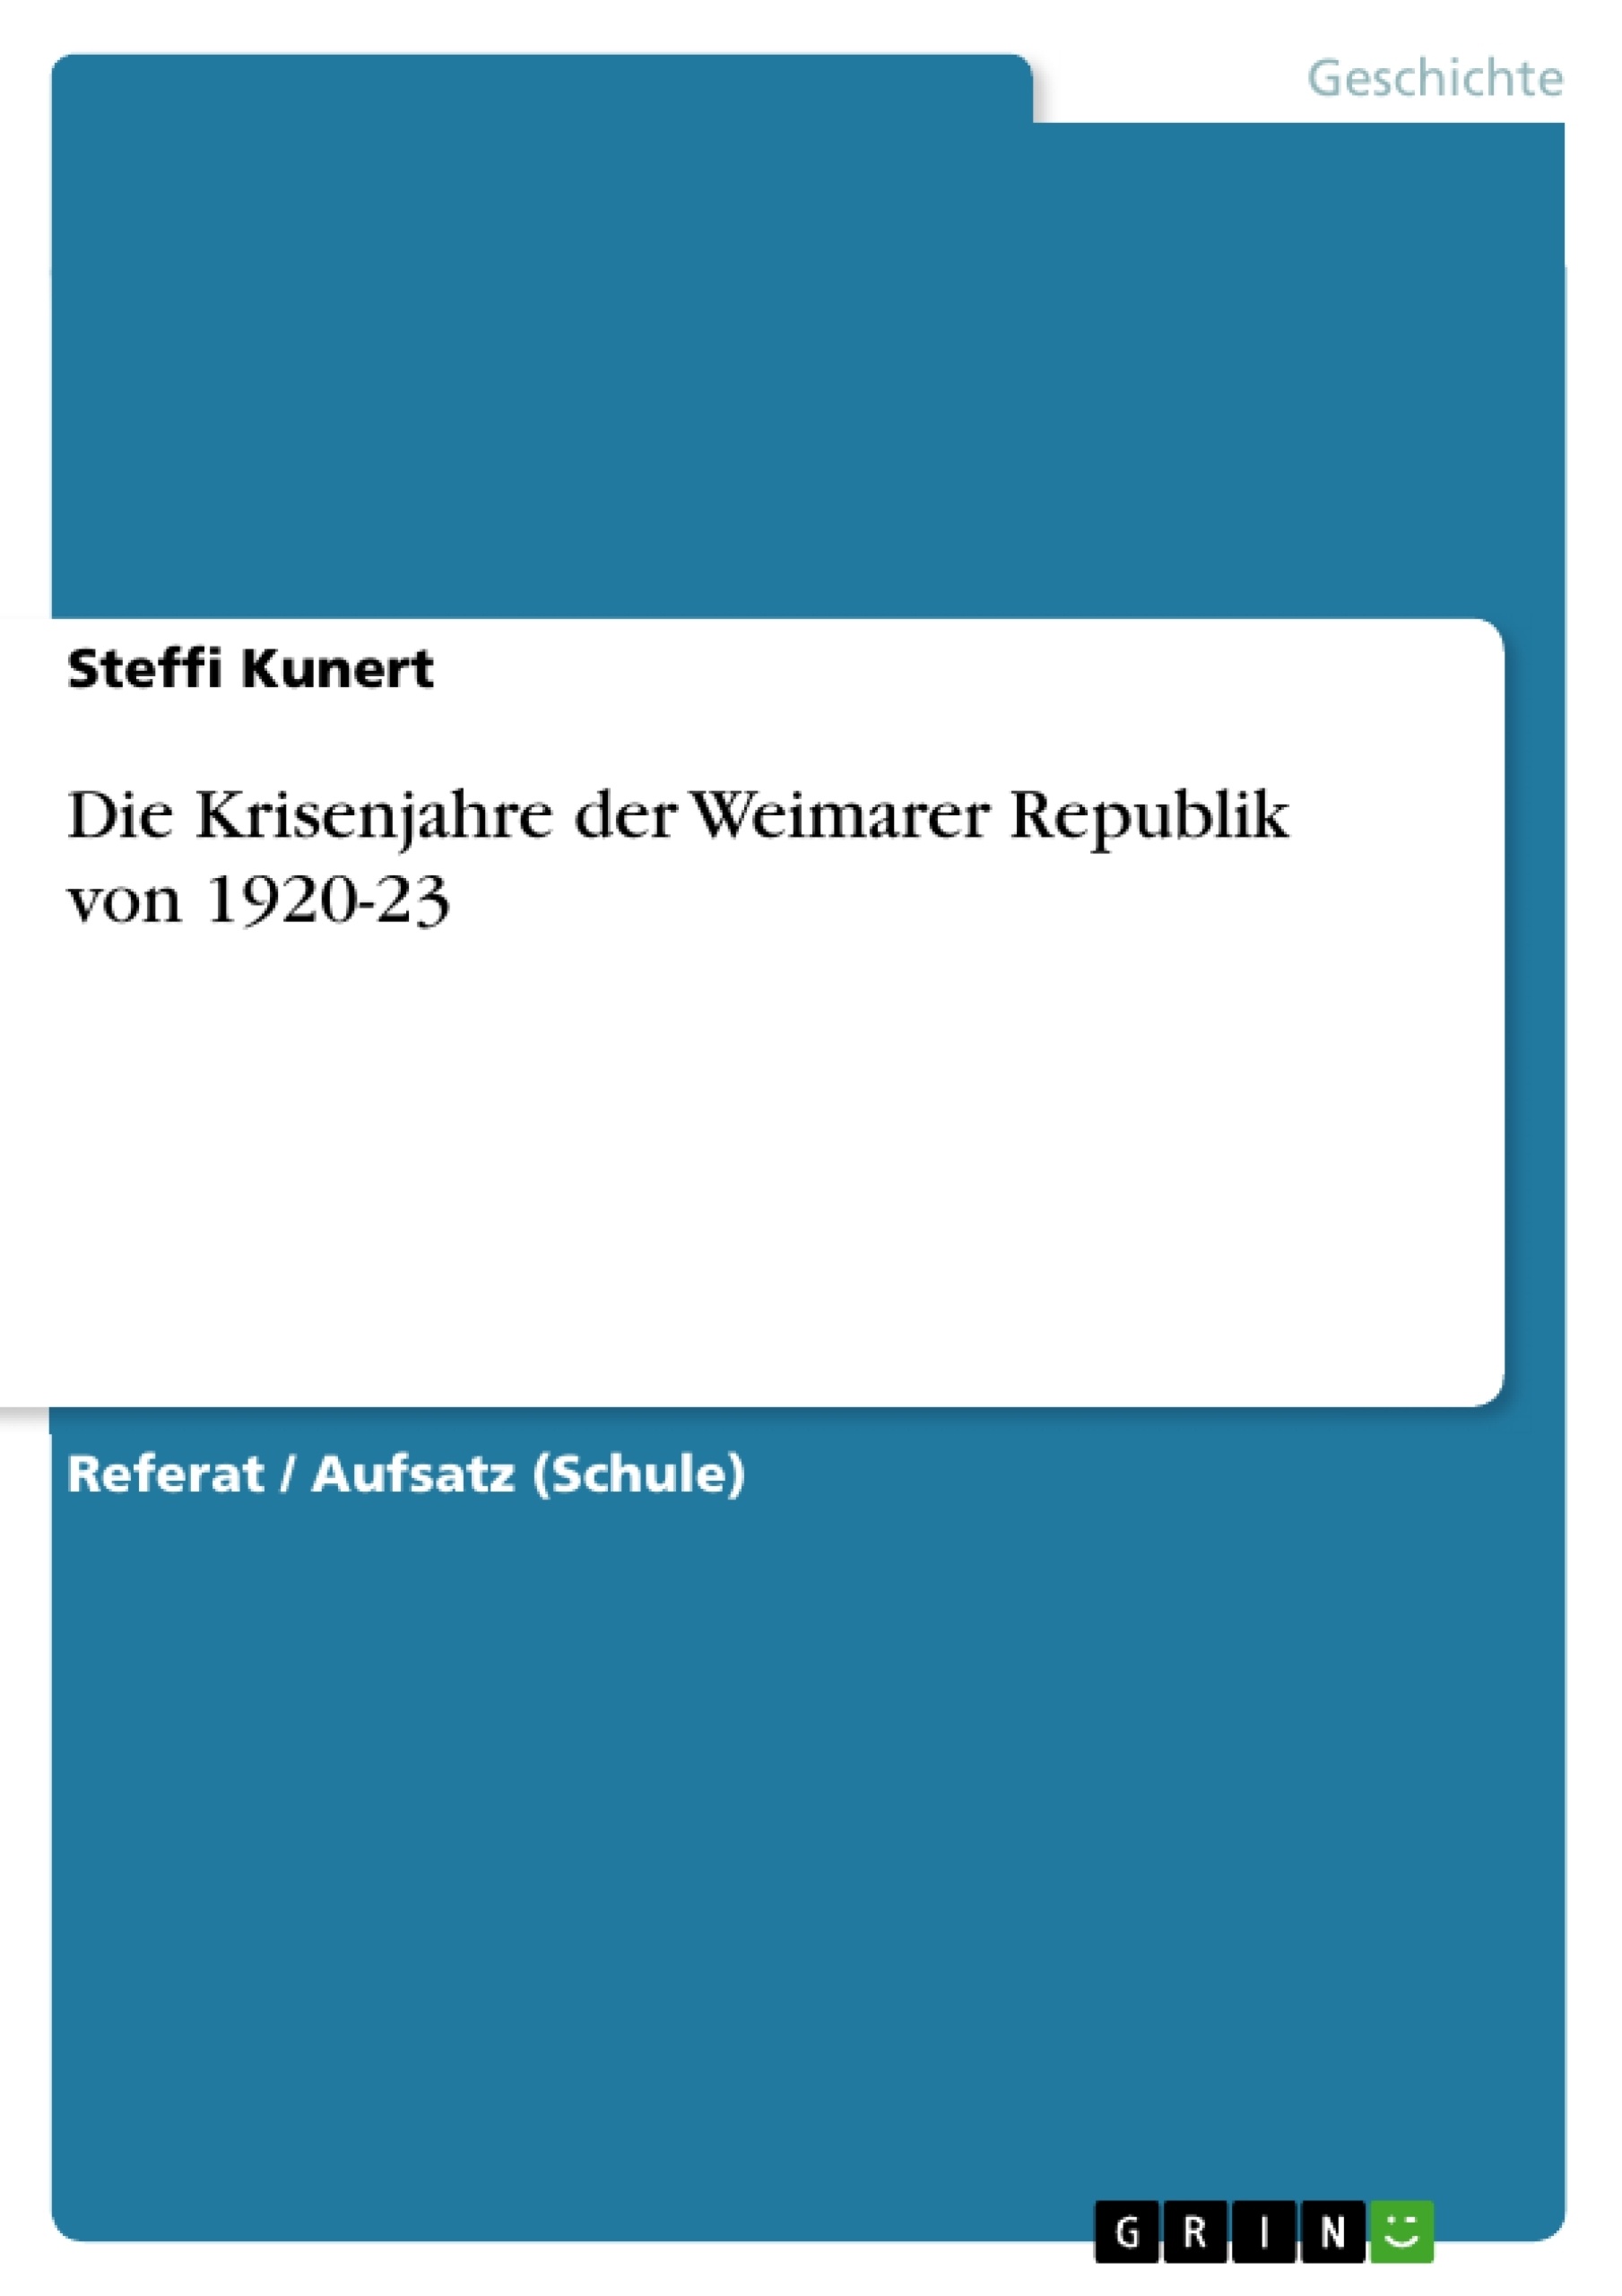 Título: Die Krisenjahre der Weimarer Republik von 1920-23